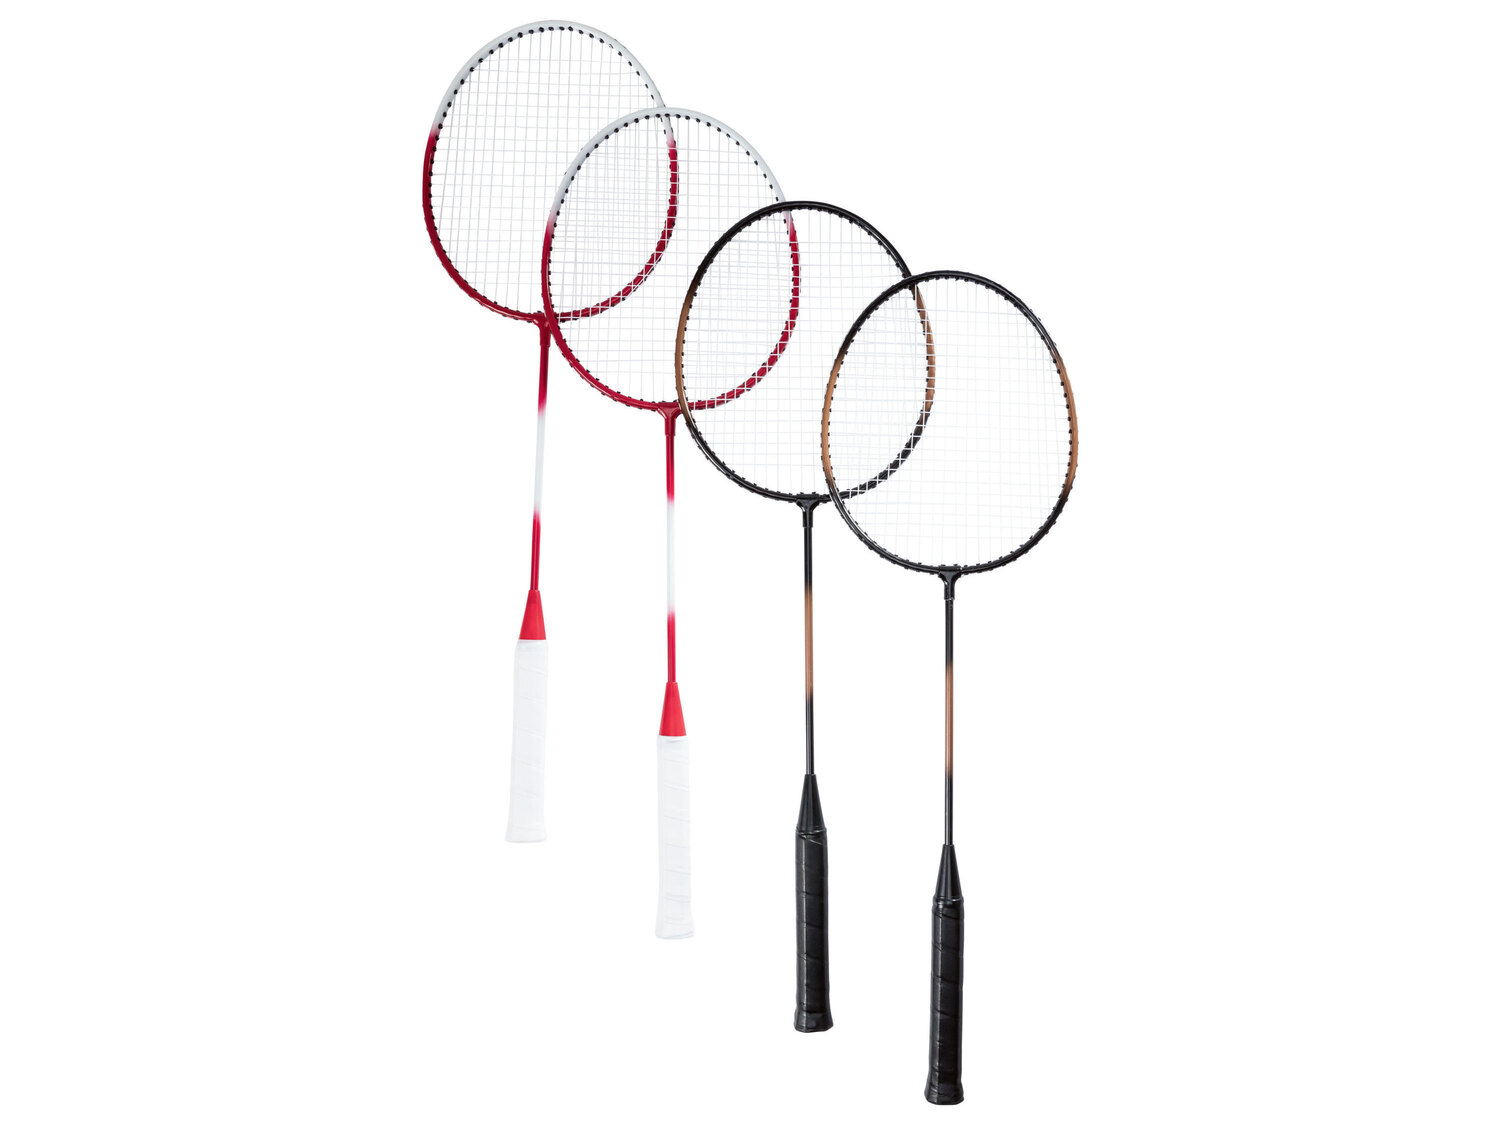 Zestaw do badmintona dla 4 graczy Crivit, cena 59,90 PLN 
- w zestawie: 4 rakiety, ...